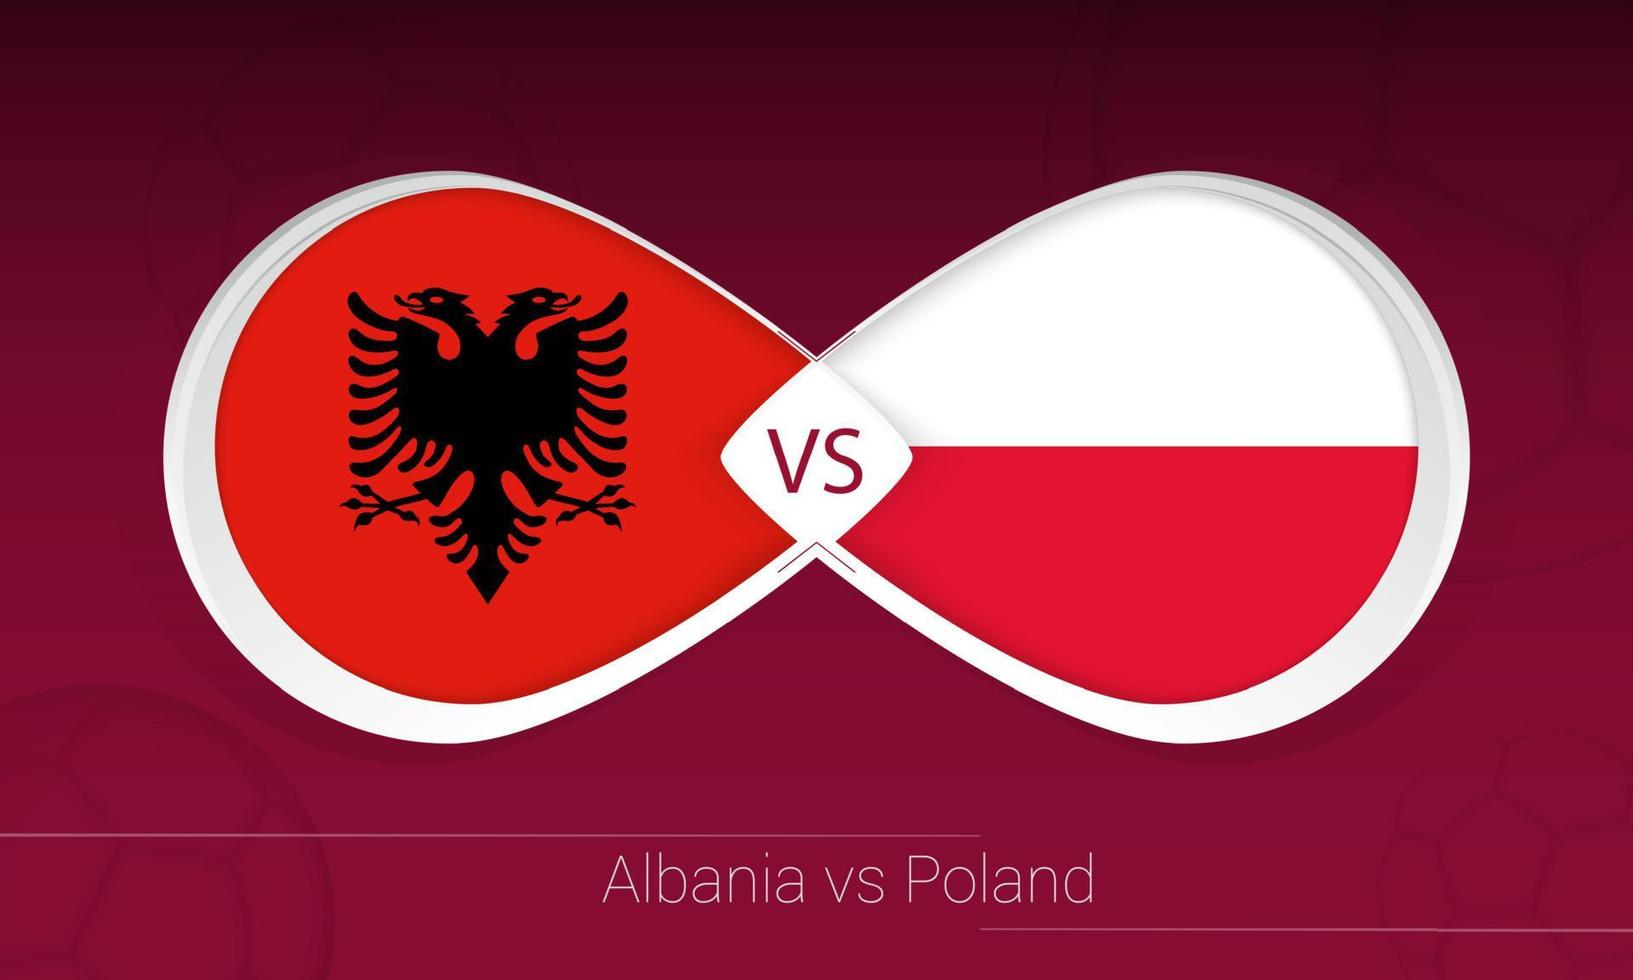 albanien gegen polen im fußballwettbewerb, gruppe i. gegen Symbol auf Fußballhintergrund. vektor